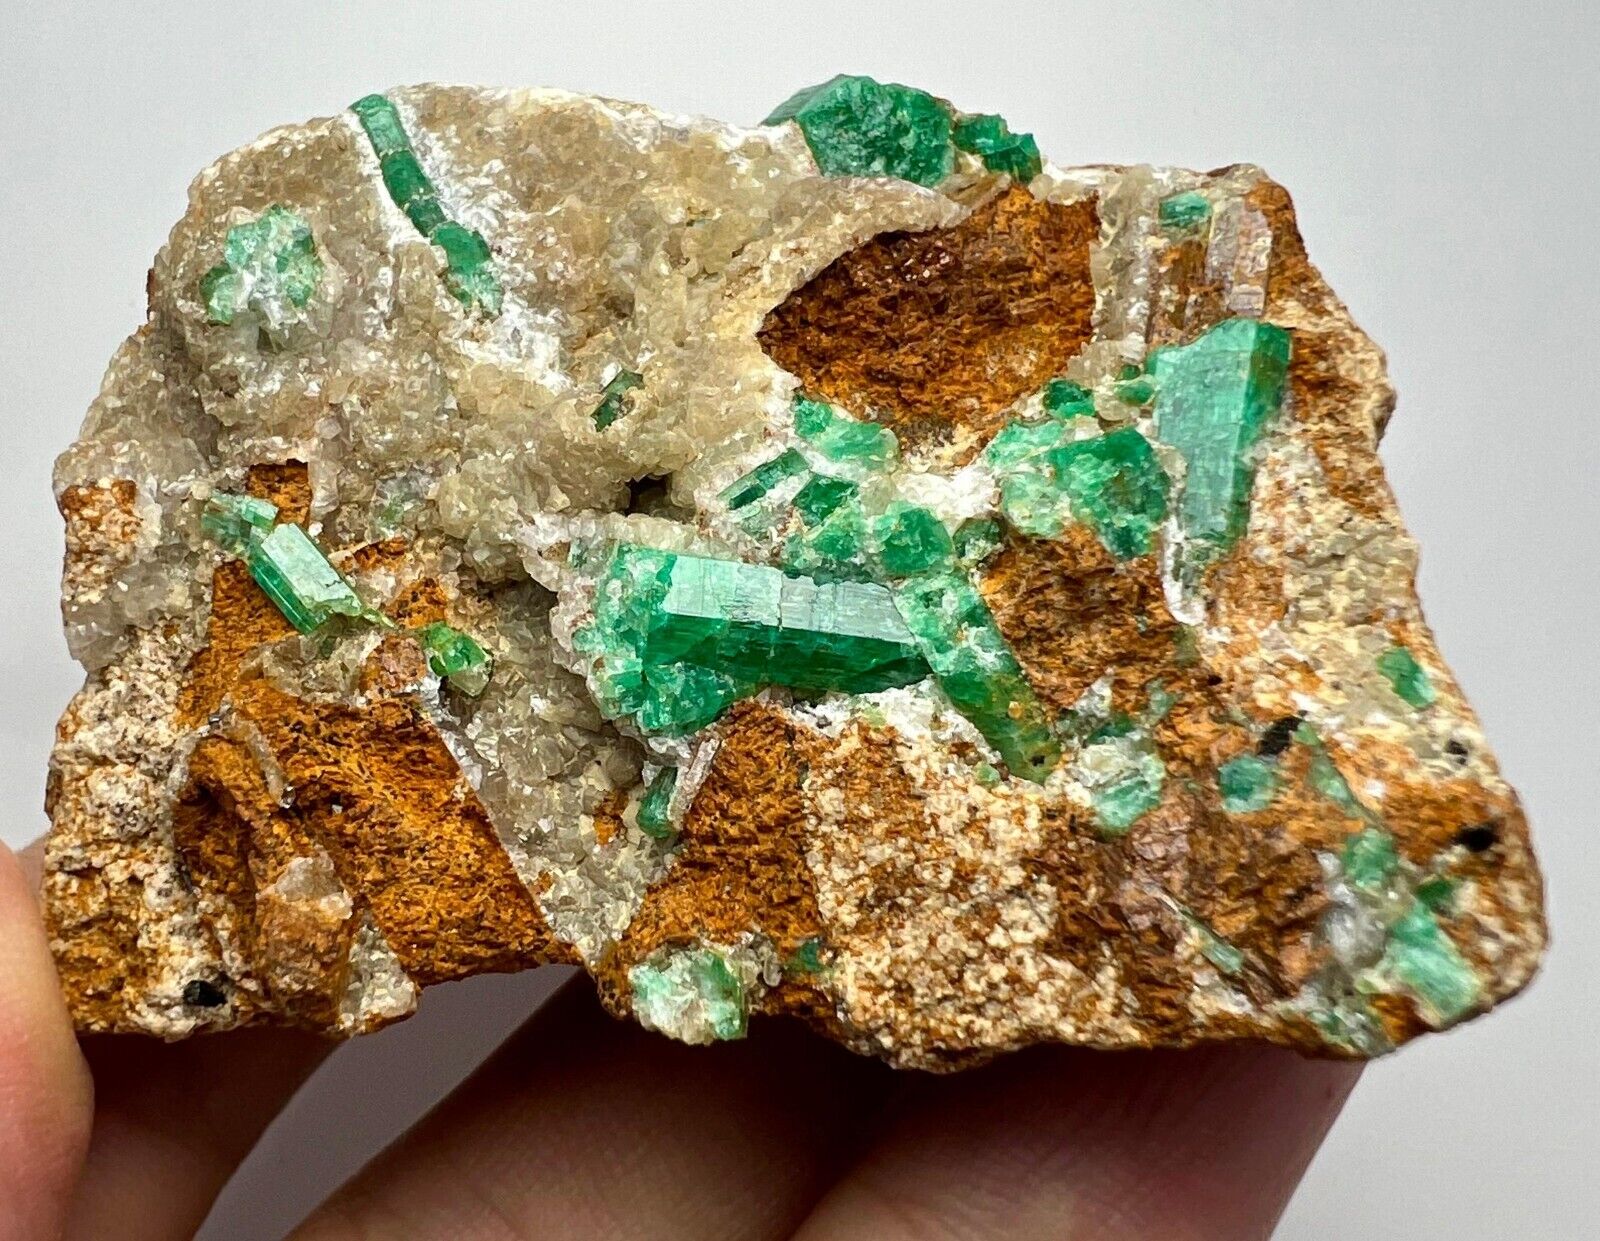 High quality top green Panjshir Emerald crystals on matrix, 99 grams.